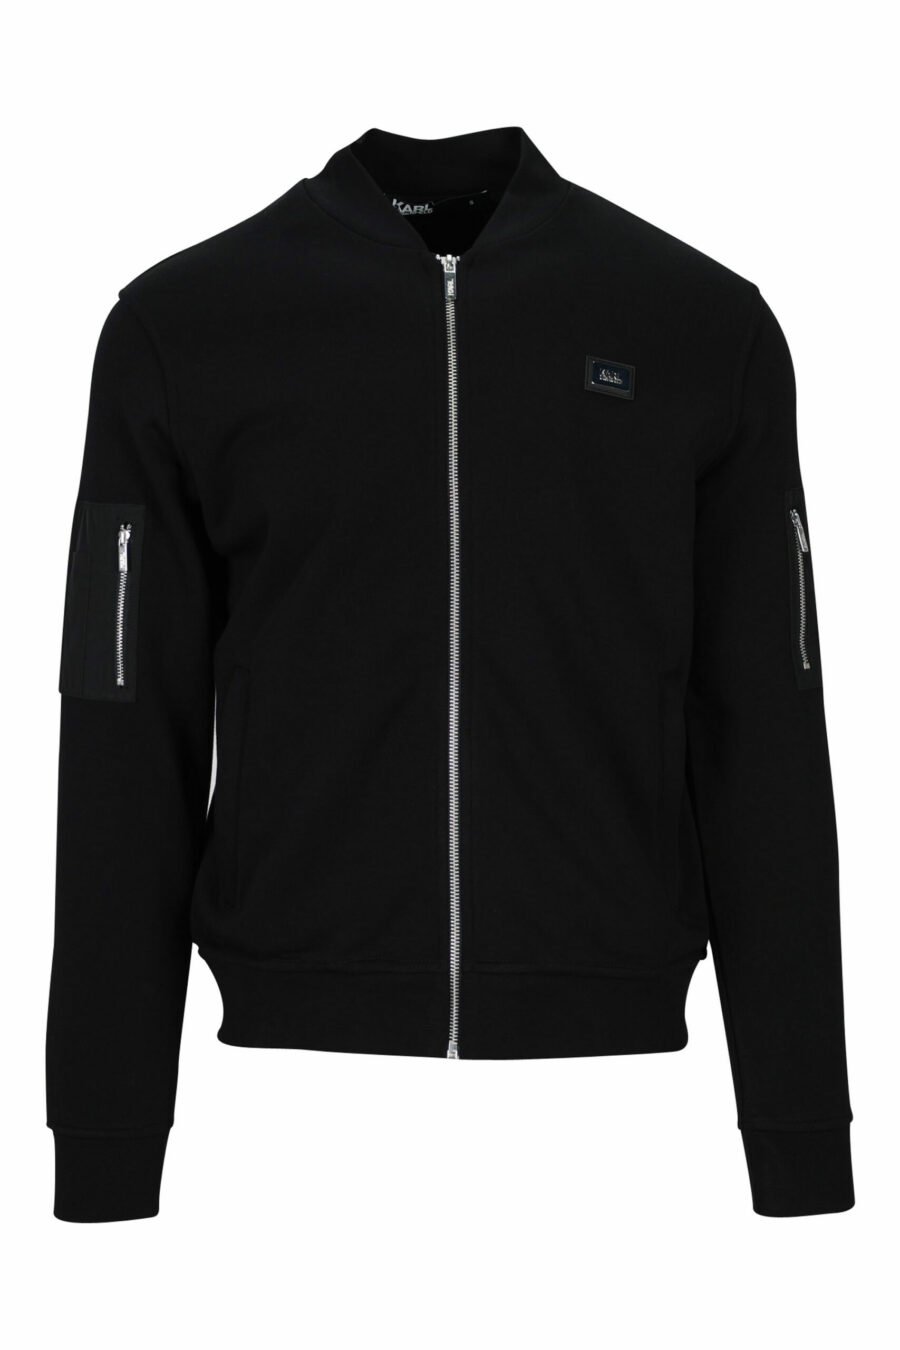 Schwarze Jacke mit Mini-Logo auf Abzeichen und Ärmeltaschen - 4062226654111 skaliert